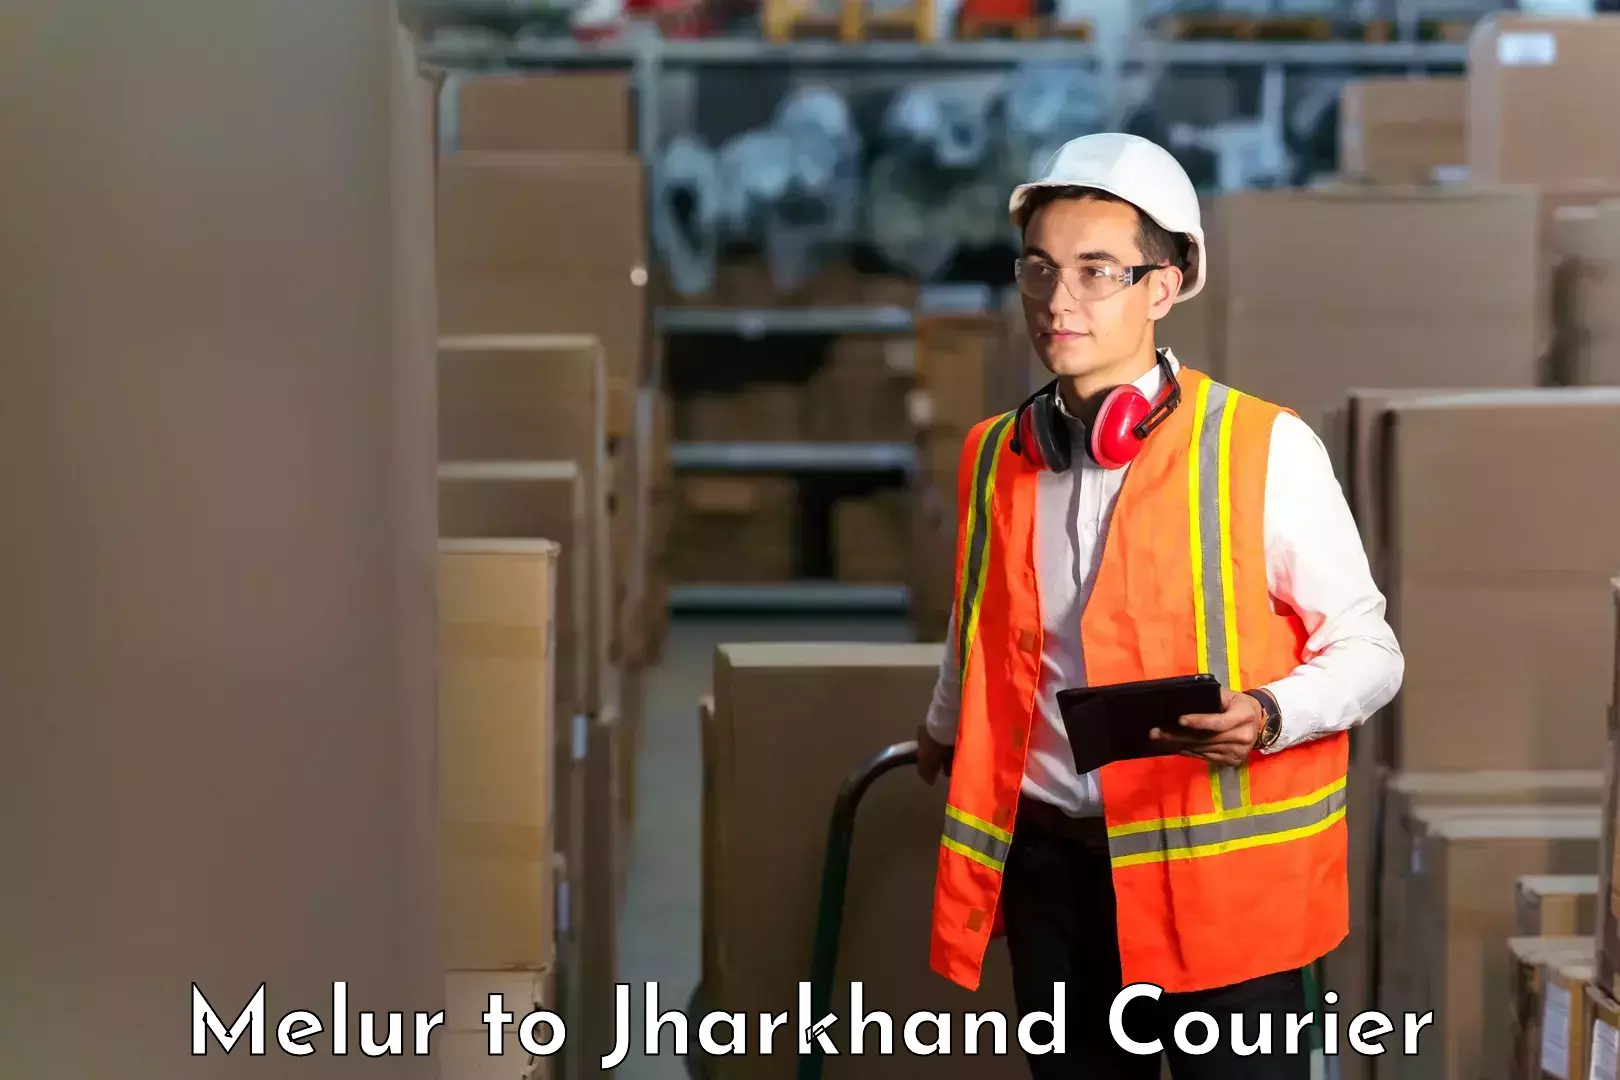 Efficient parcel service Melur to Jharkhand